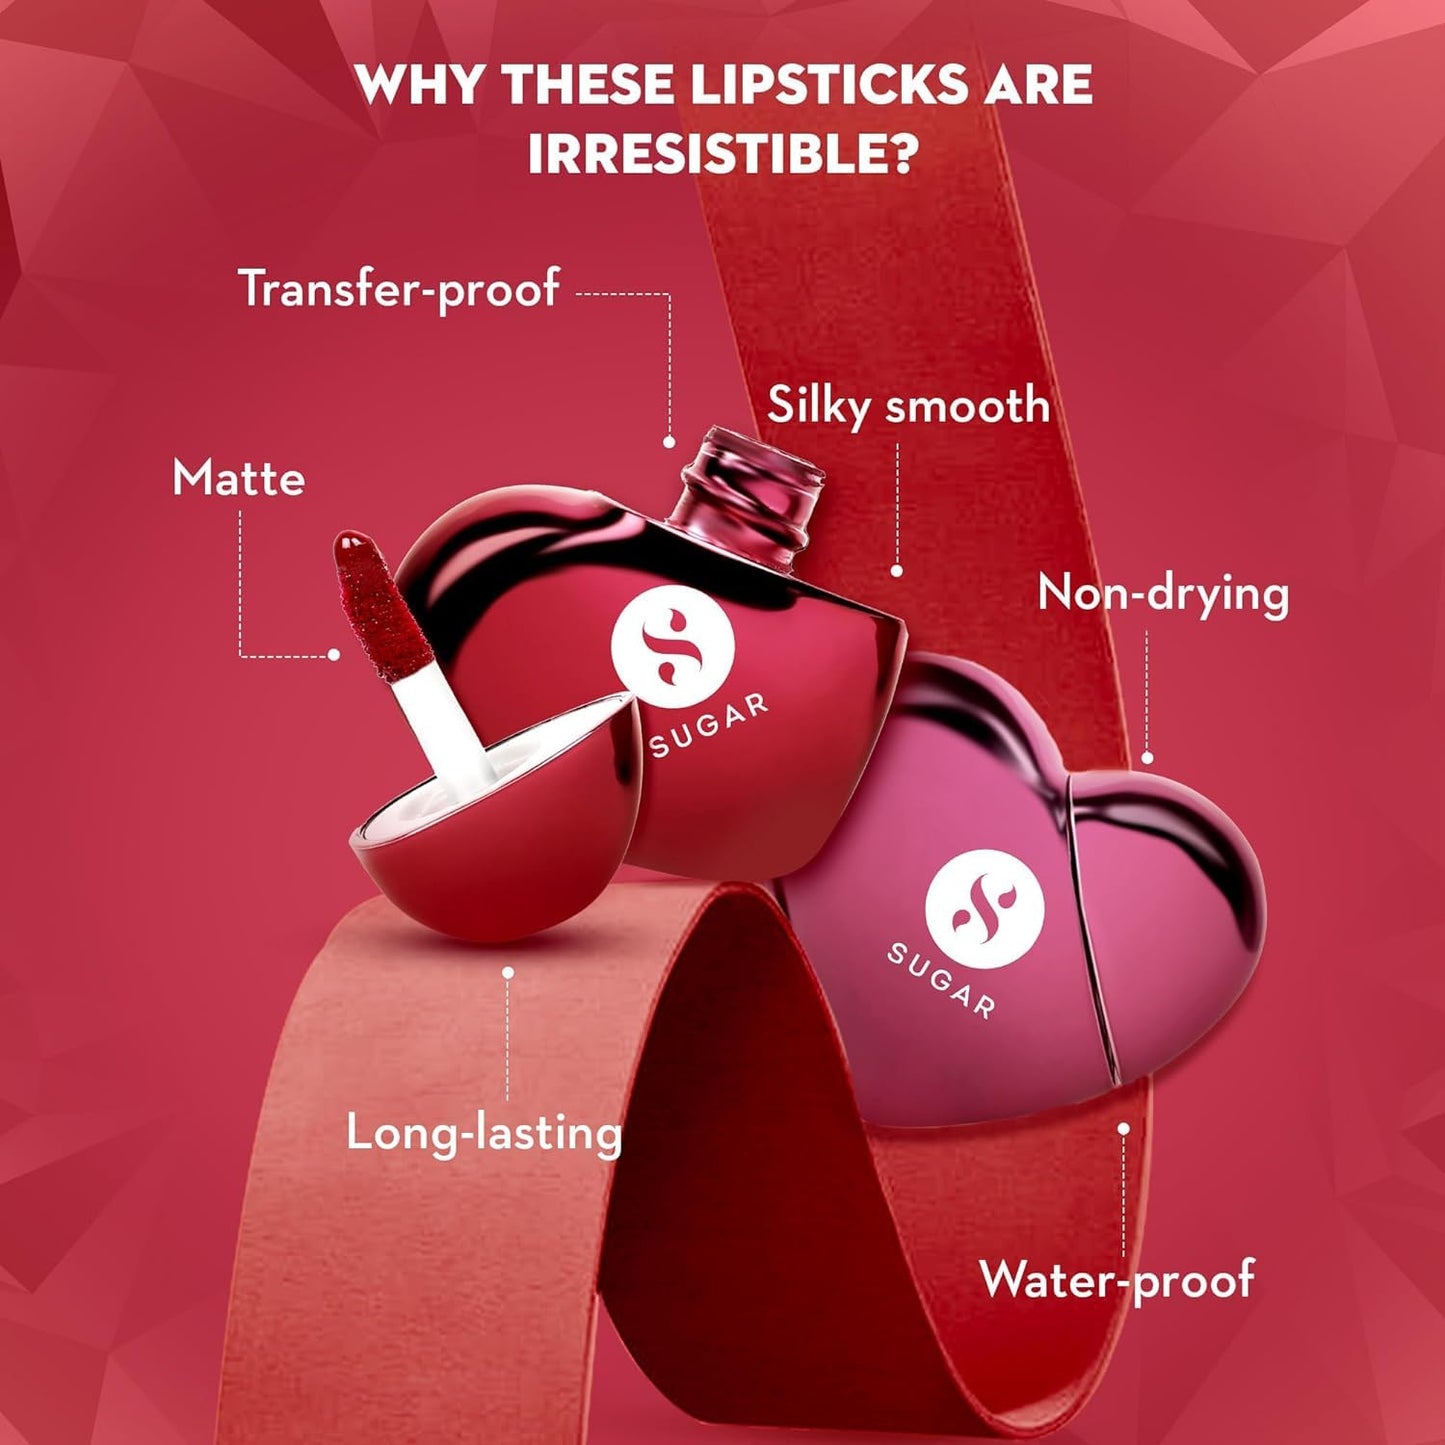 SUGAR Cosmetics Makeup Kit for Women | Gift Set for Women | Kajal, Lipstick, Lipblam & Blush | Combo of 4